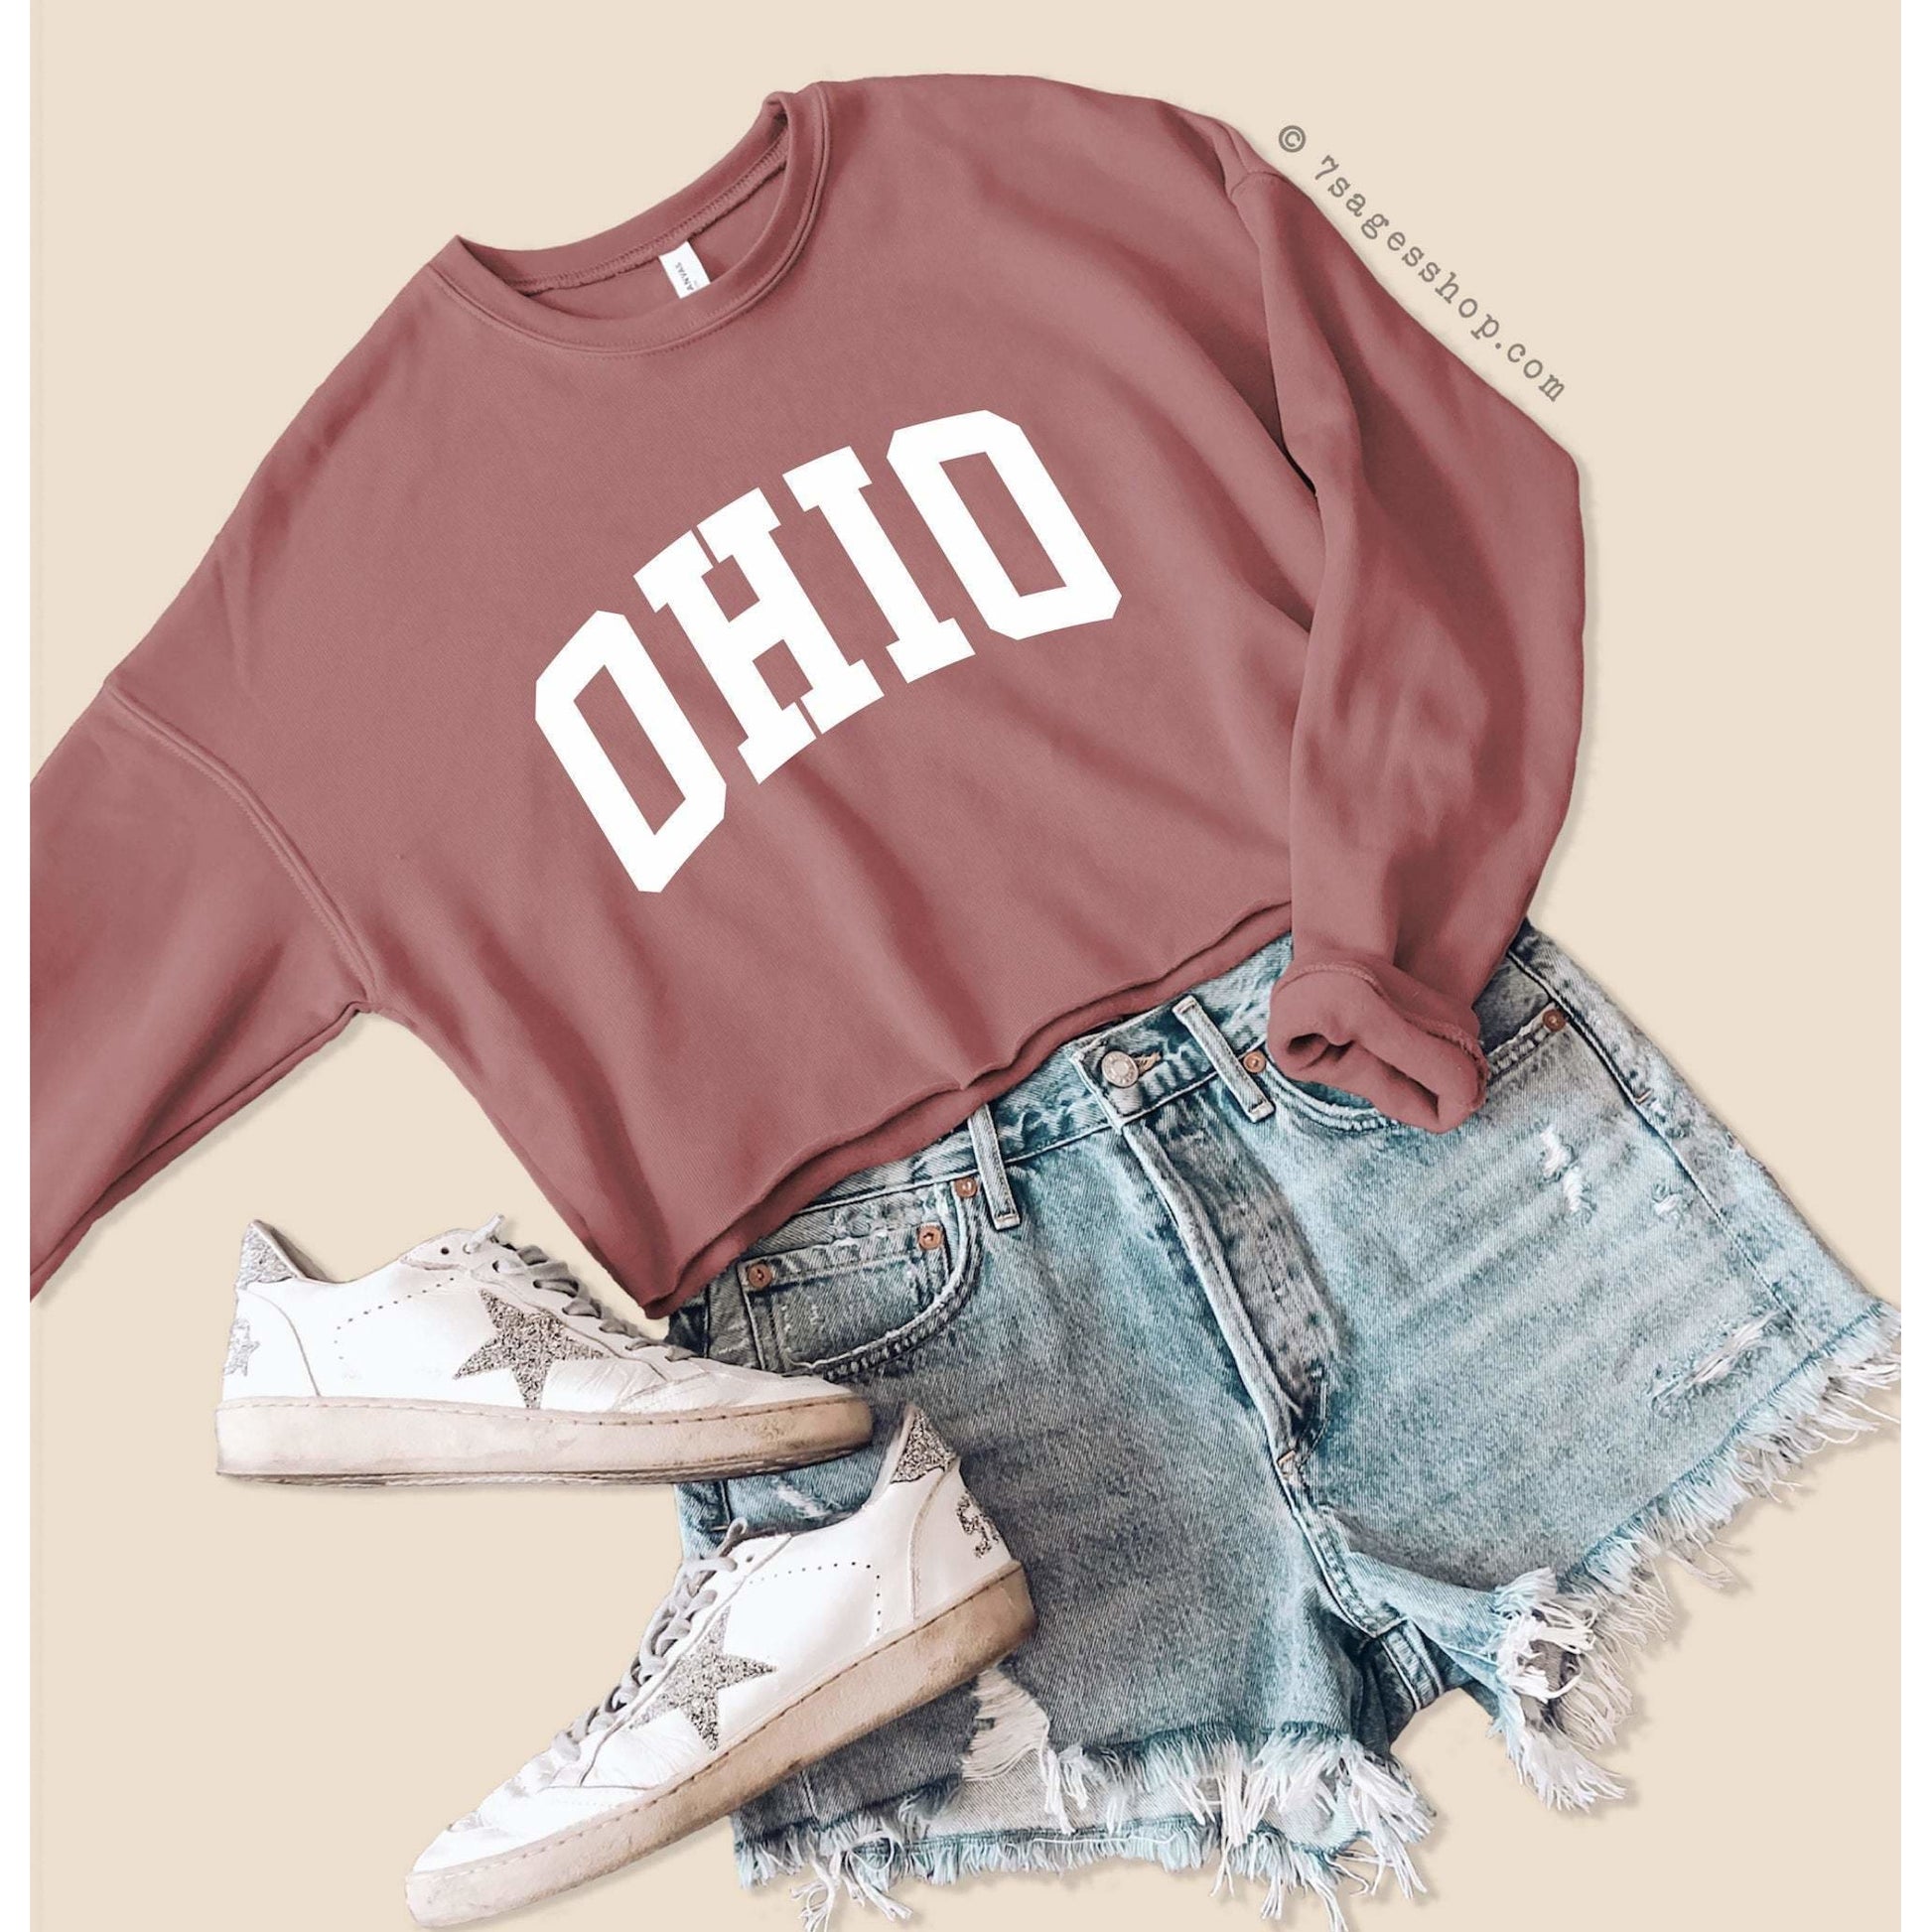 Ohio Cropped Sweatshirt - Ohio Sweatshirt - Ohio Shirts - Ohio University Shirt - Fleece Sweatshirt